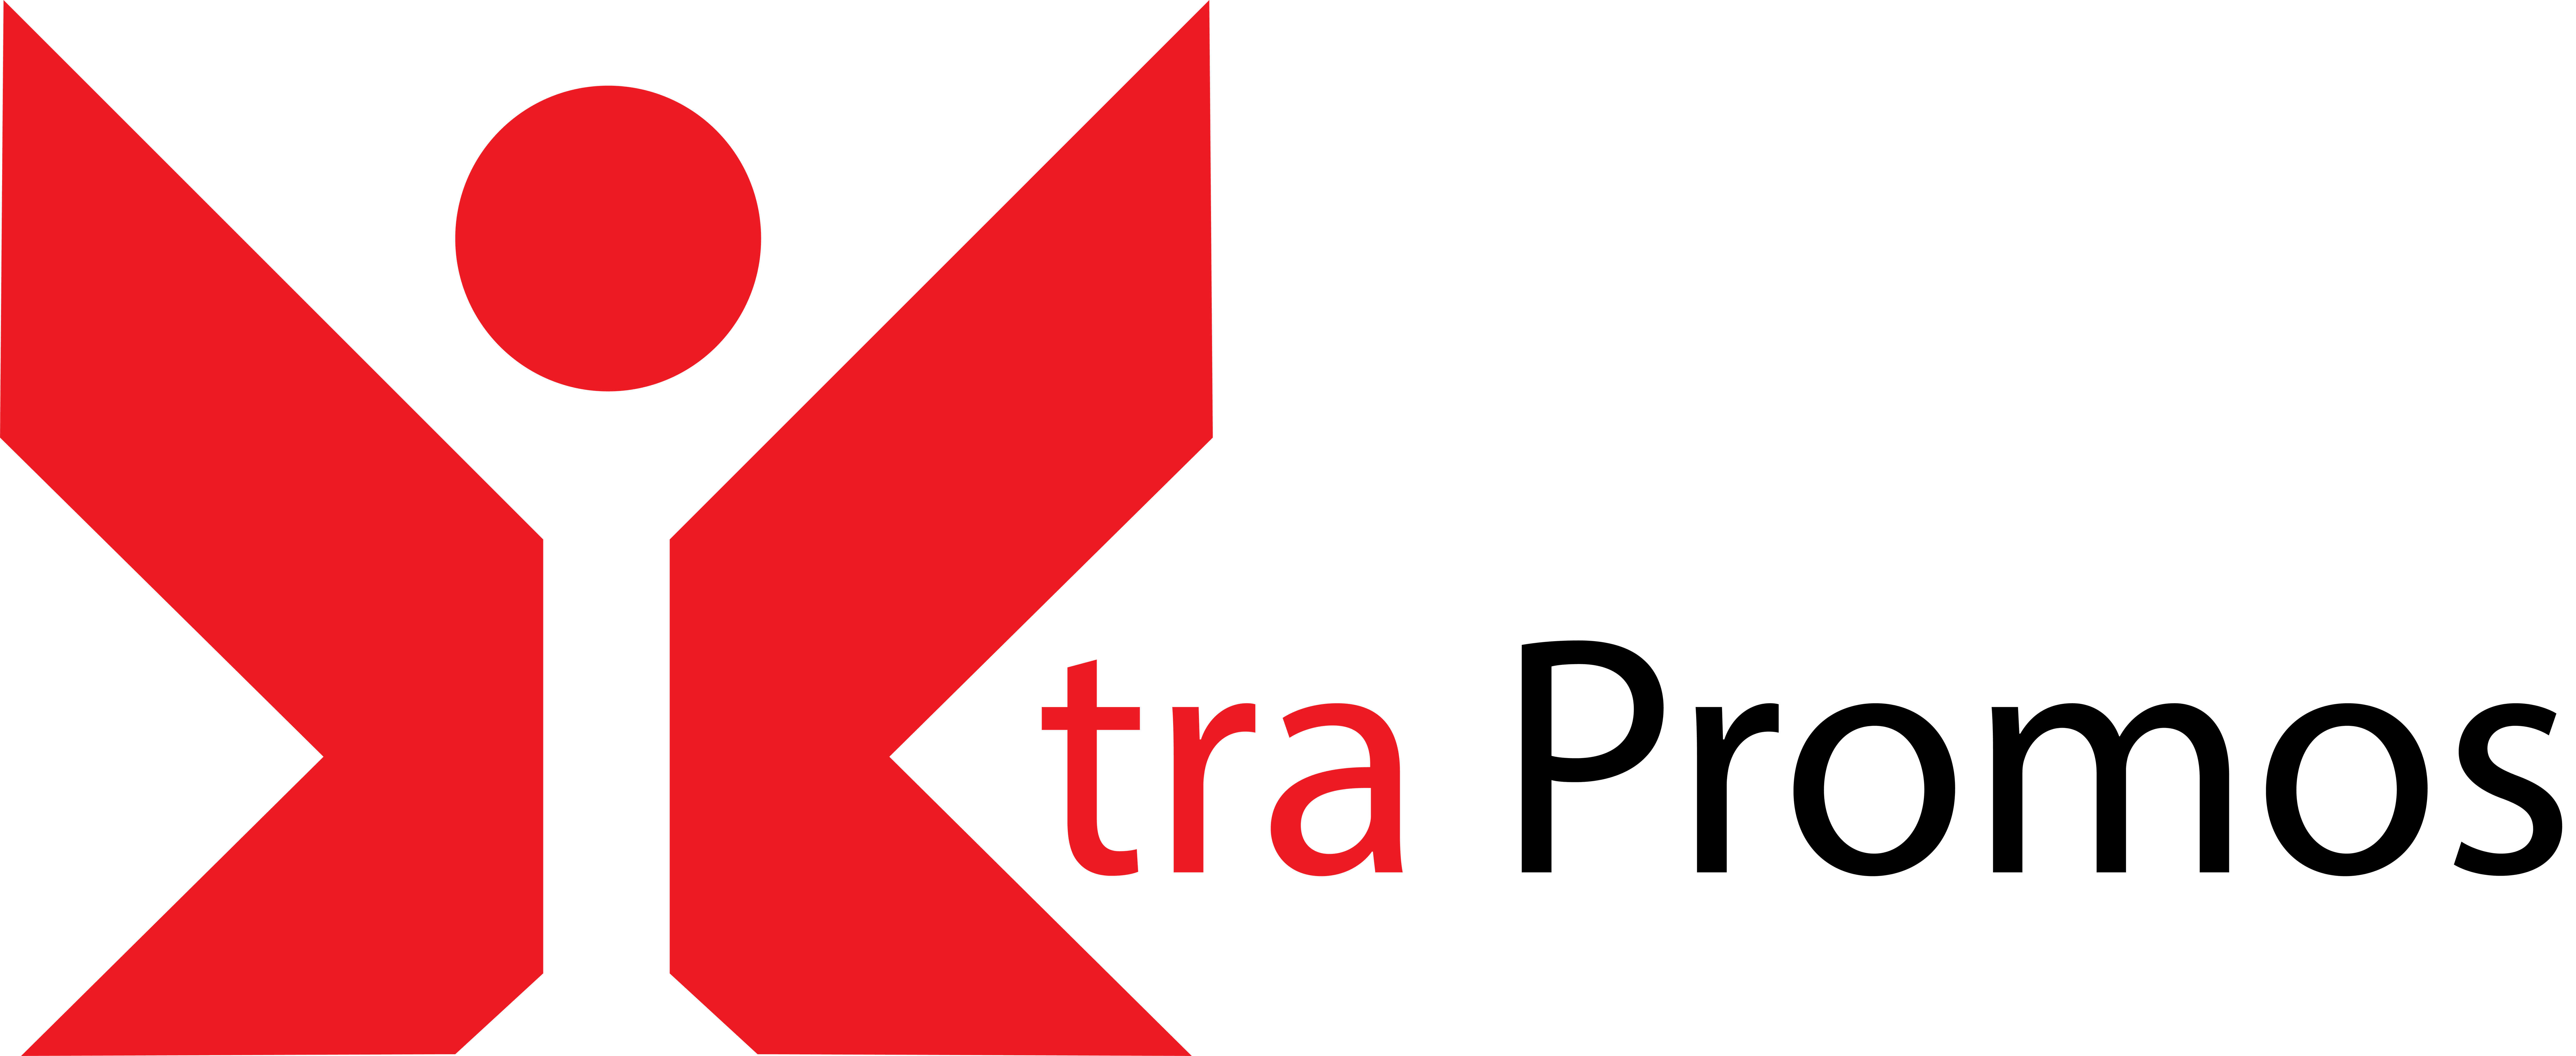 Xtra Promos's Logo